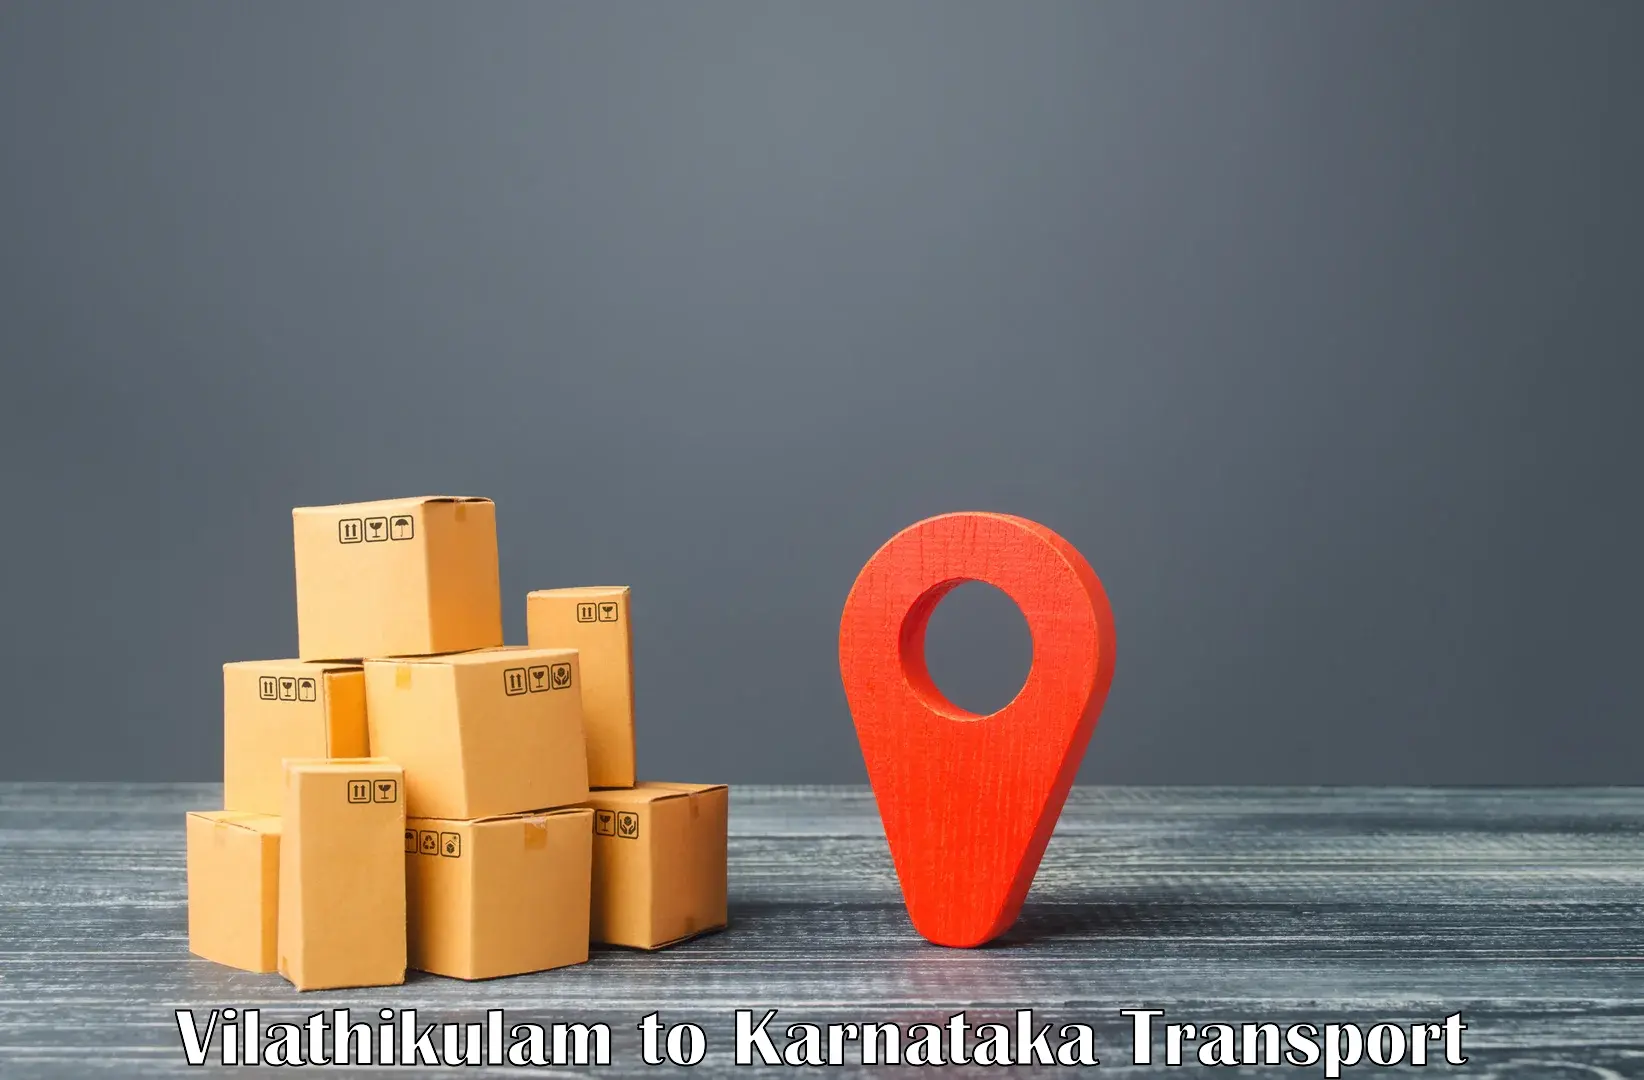 Online transport booking in Vilathikulam to Ranebennur